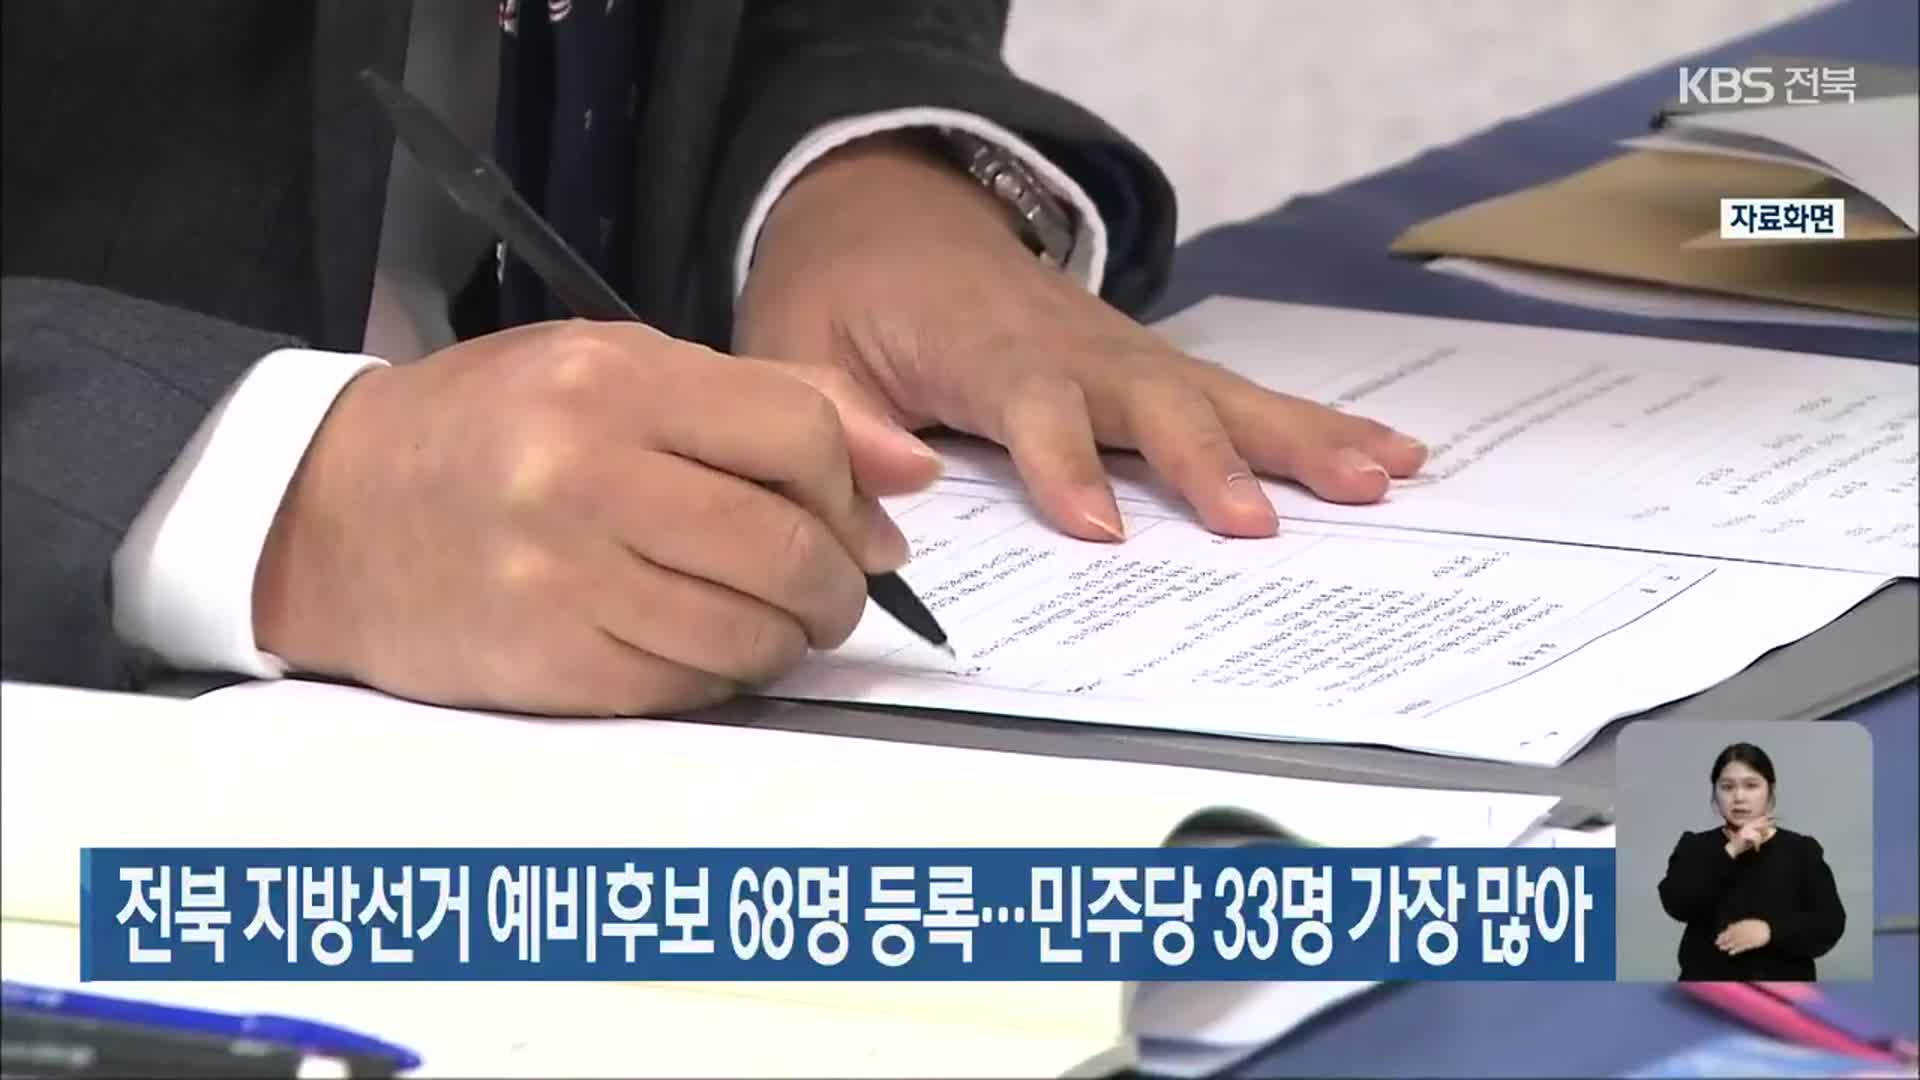 전북 지방선거 예비후보 68명 등록…민주당 33명 가장 많아